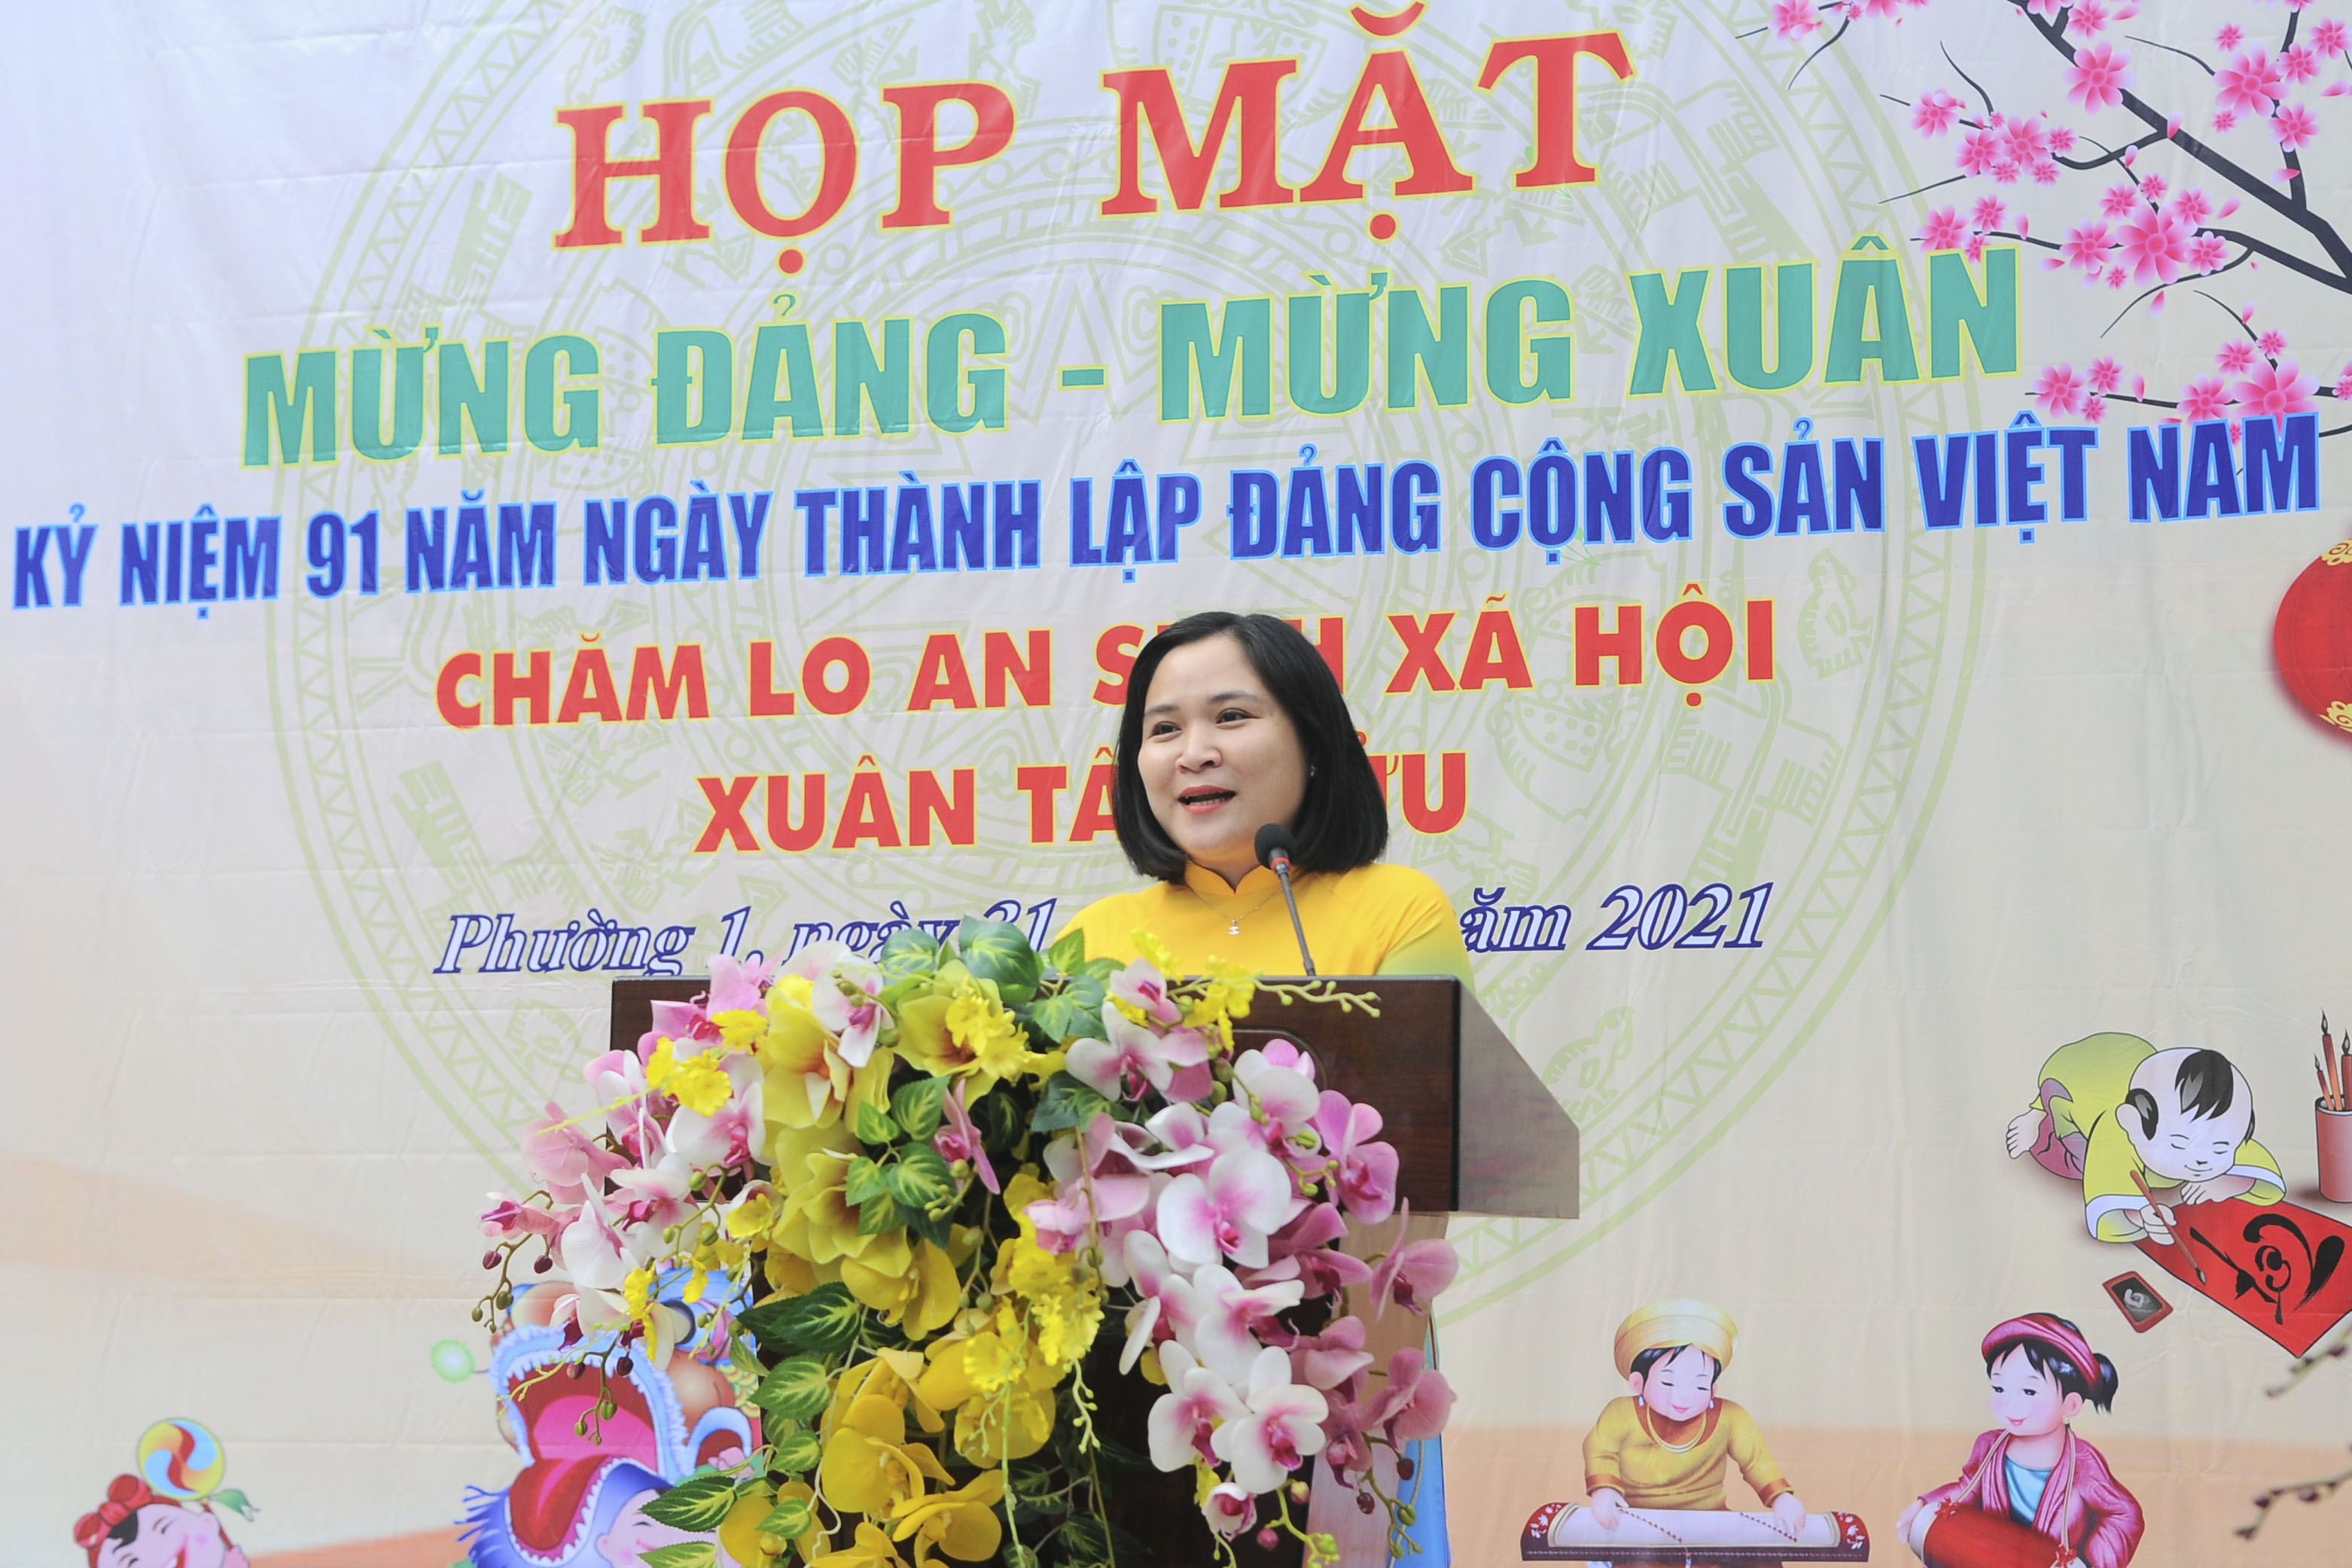 Image: Họp mặt mừng Đảng – Mừng xuân Tân Sửu năm 2021, Kỷ niệm 91 năm ngày thành lập Đảng Cộng sản Việt Nam (03/02/1930 – 03/02/2021).